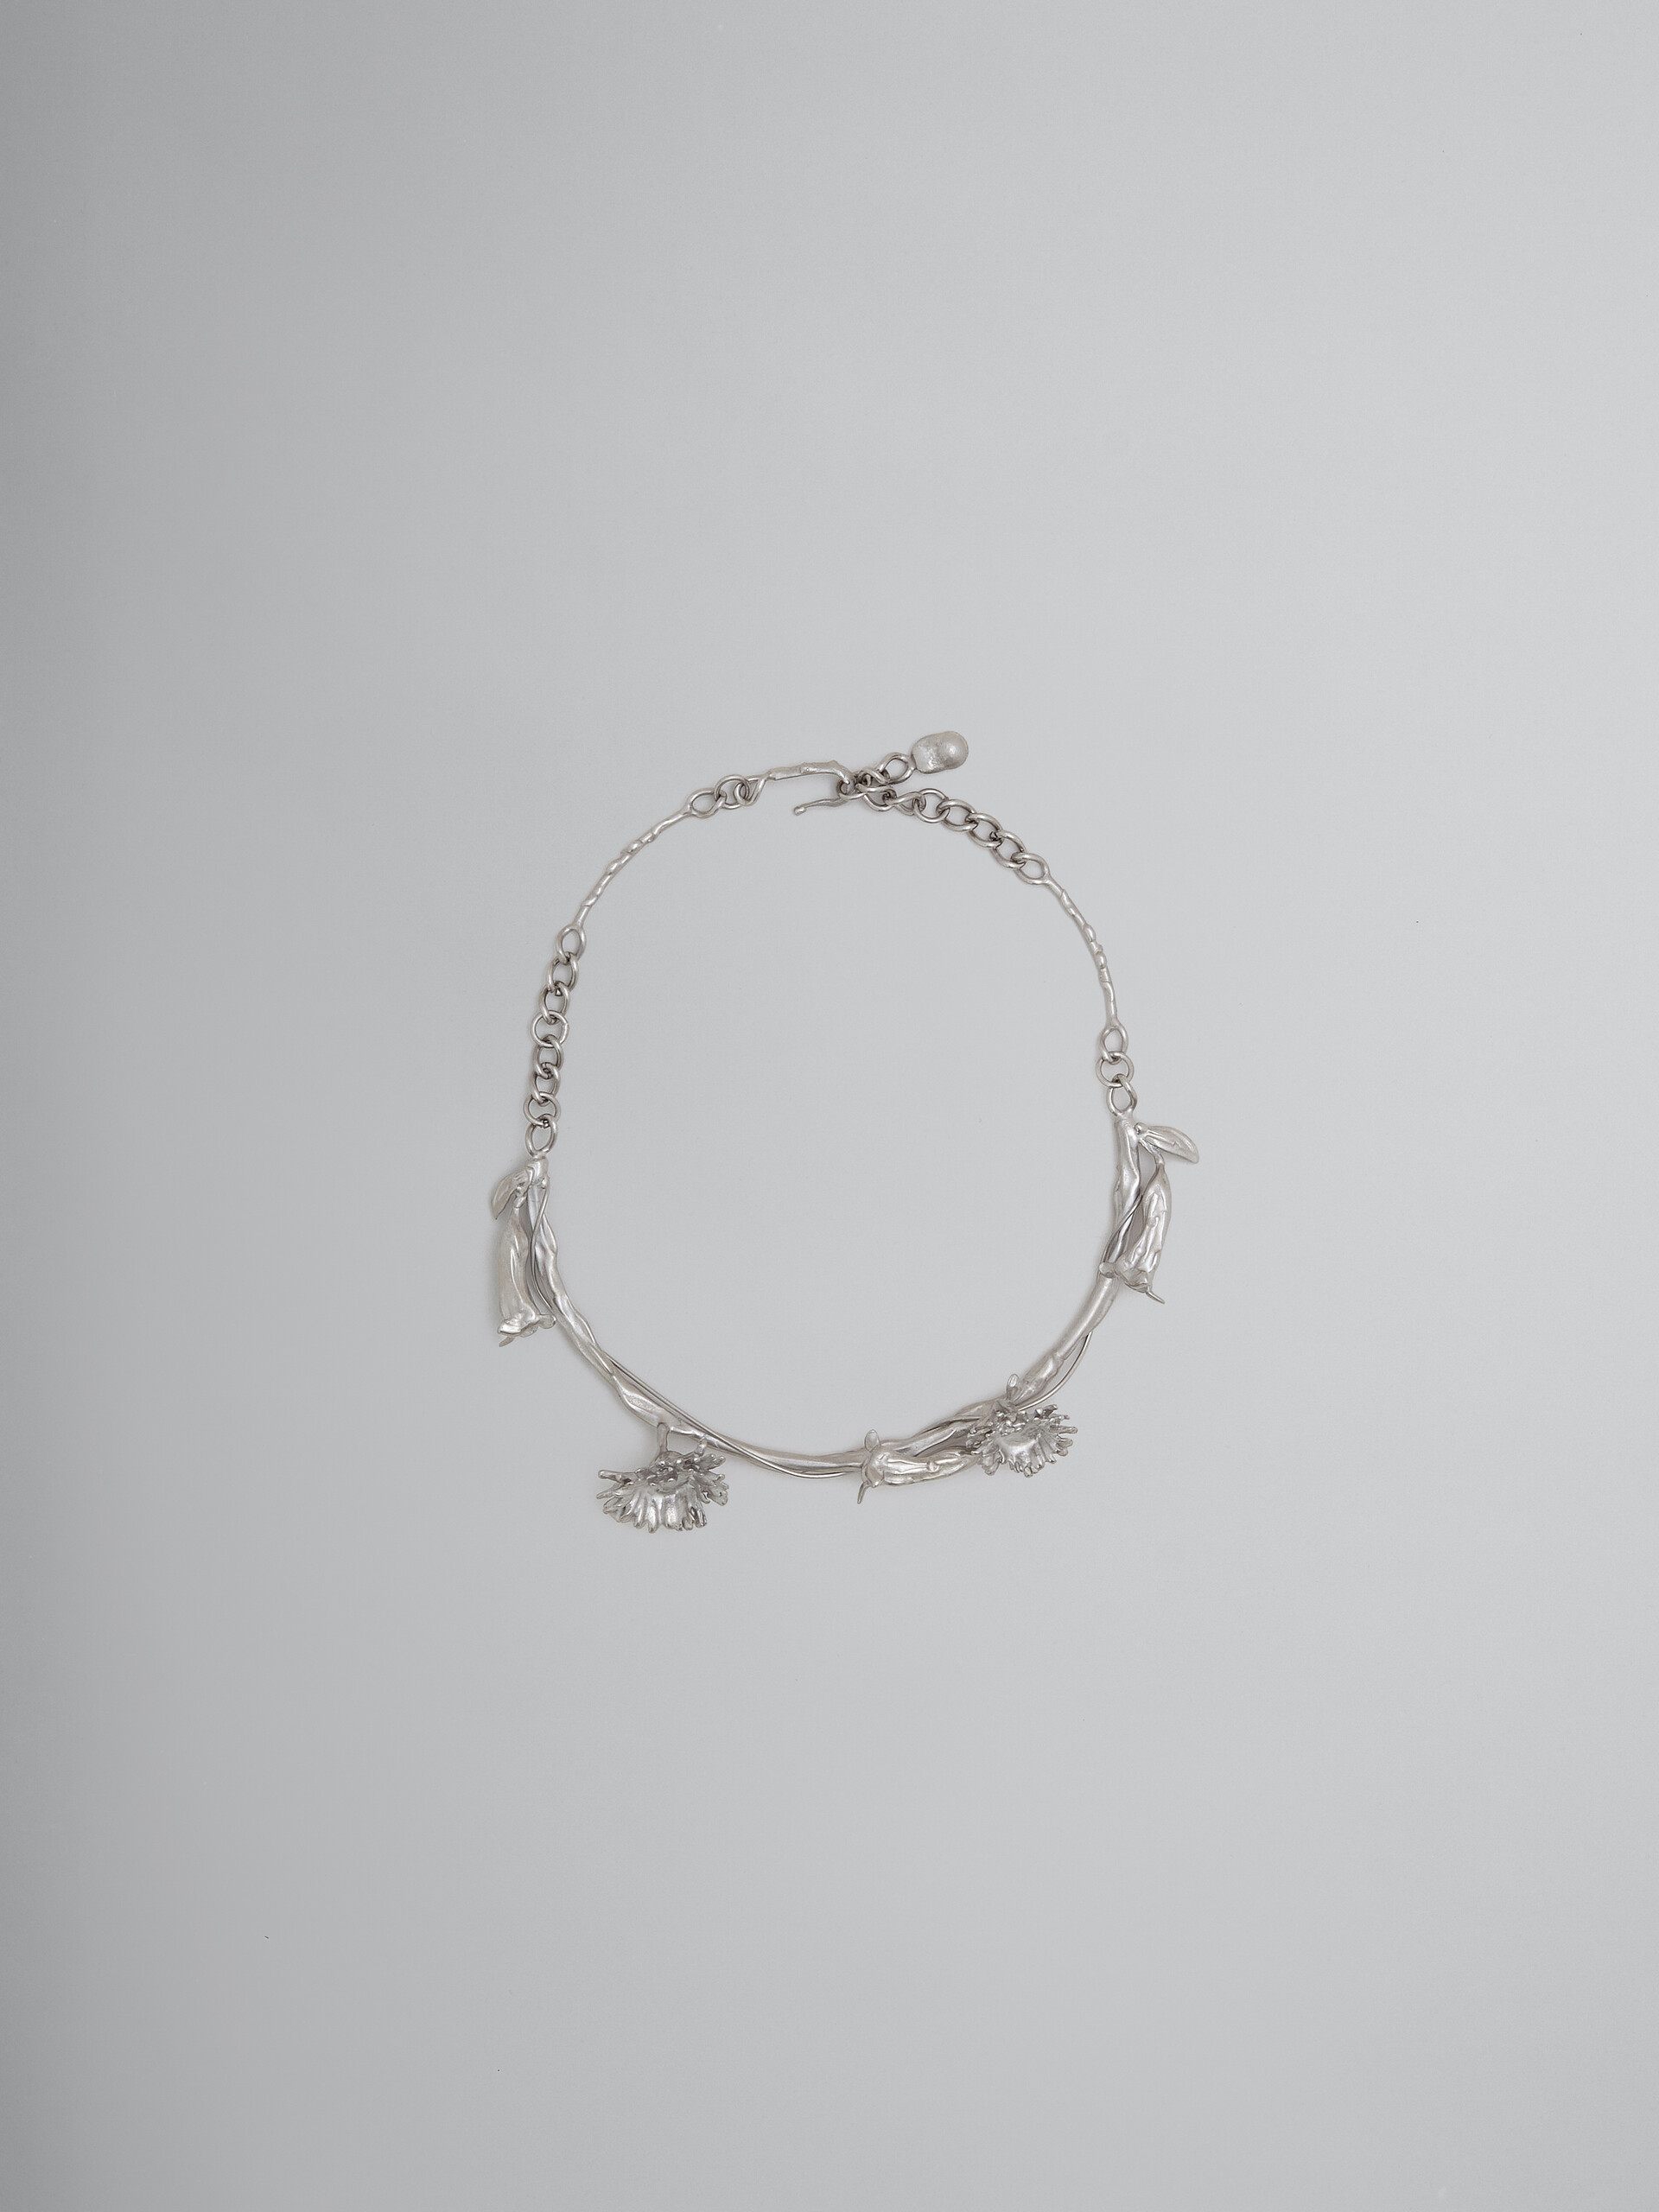 Metal calla lily necklace - Necklaces - Image 1